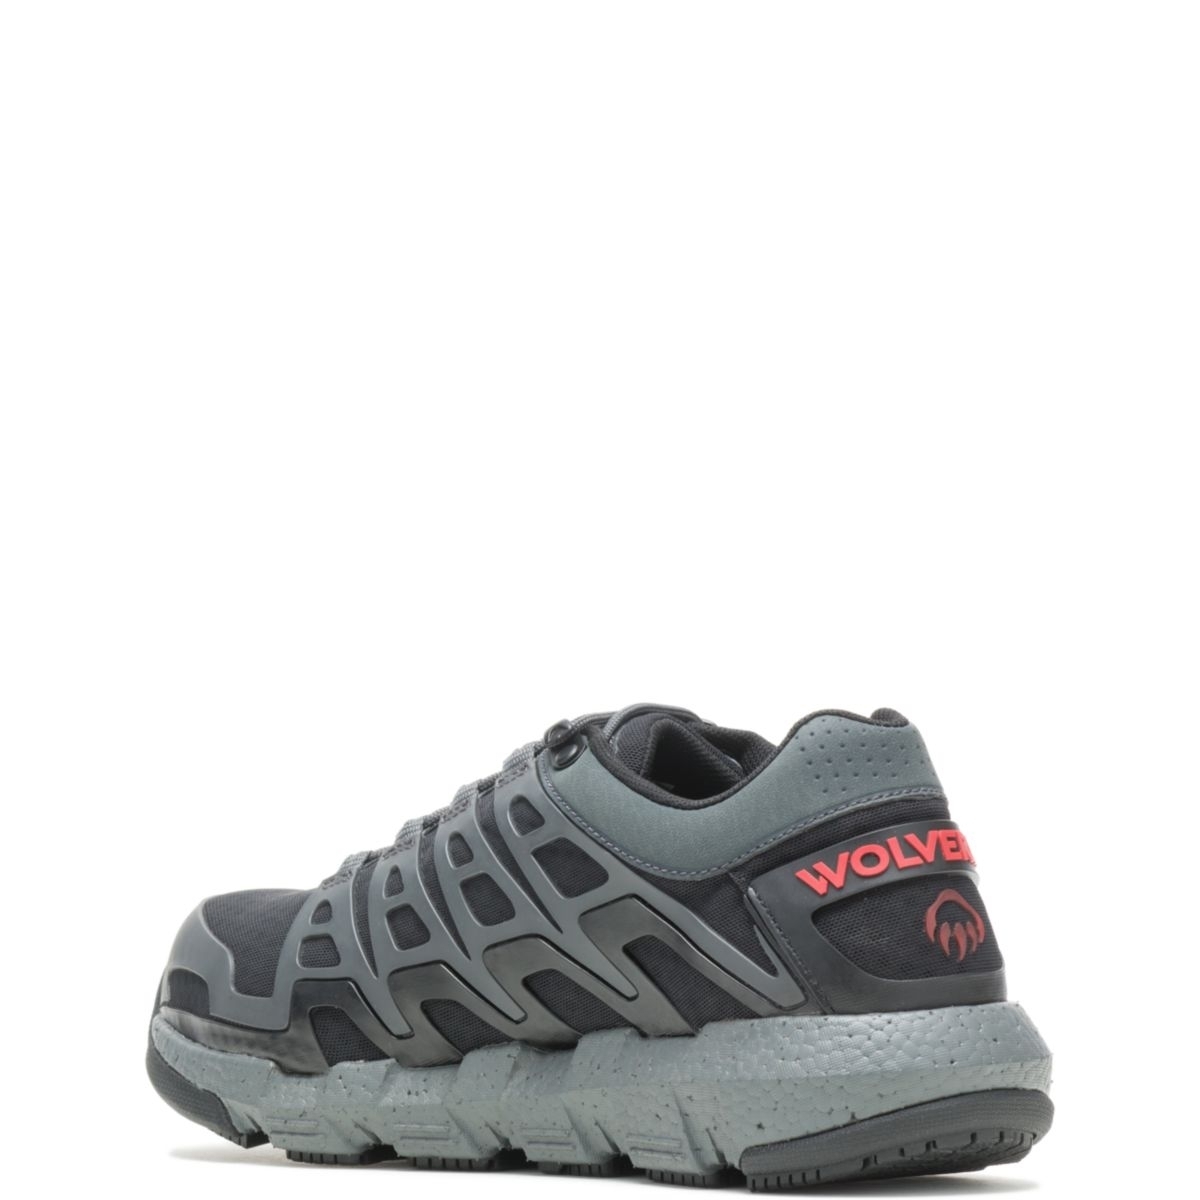 WOLVERINE Men's Rev Vent UltraSpringâ¢ DuraShocksÂ® CarbonMAXÂ® Composite Toe Work Shoe Charcoal - W211016 CHARCOAL - CHARCOAL, 13